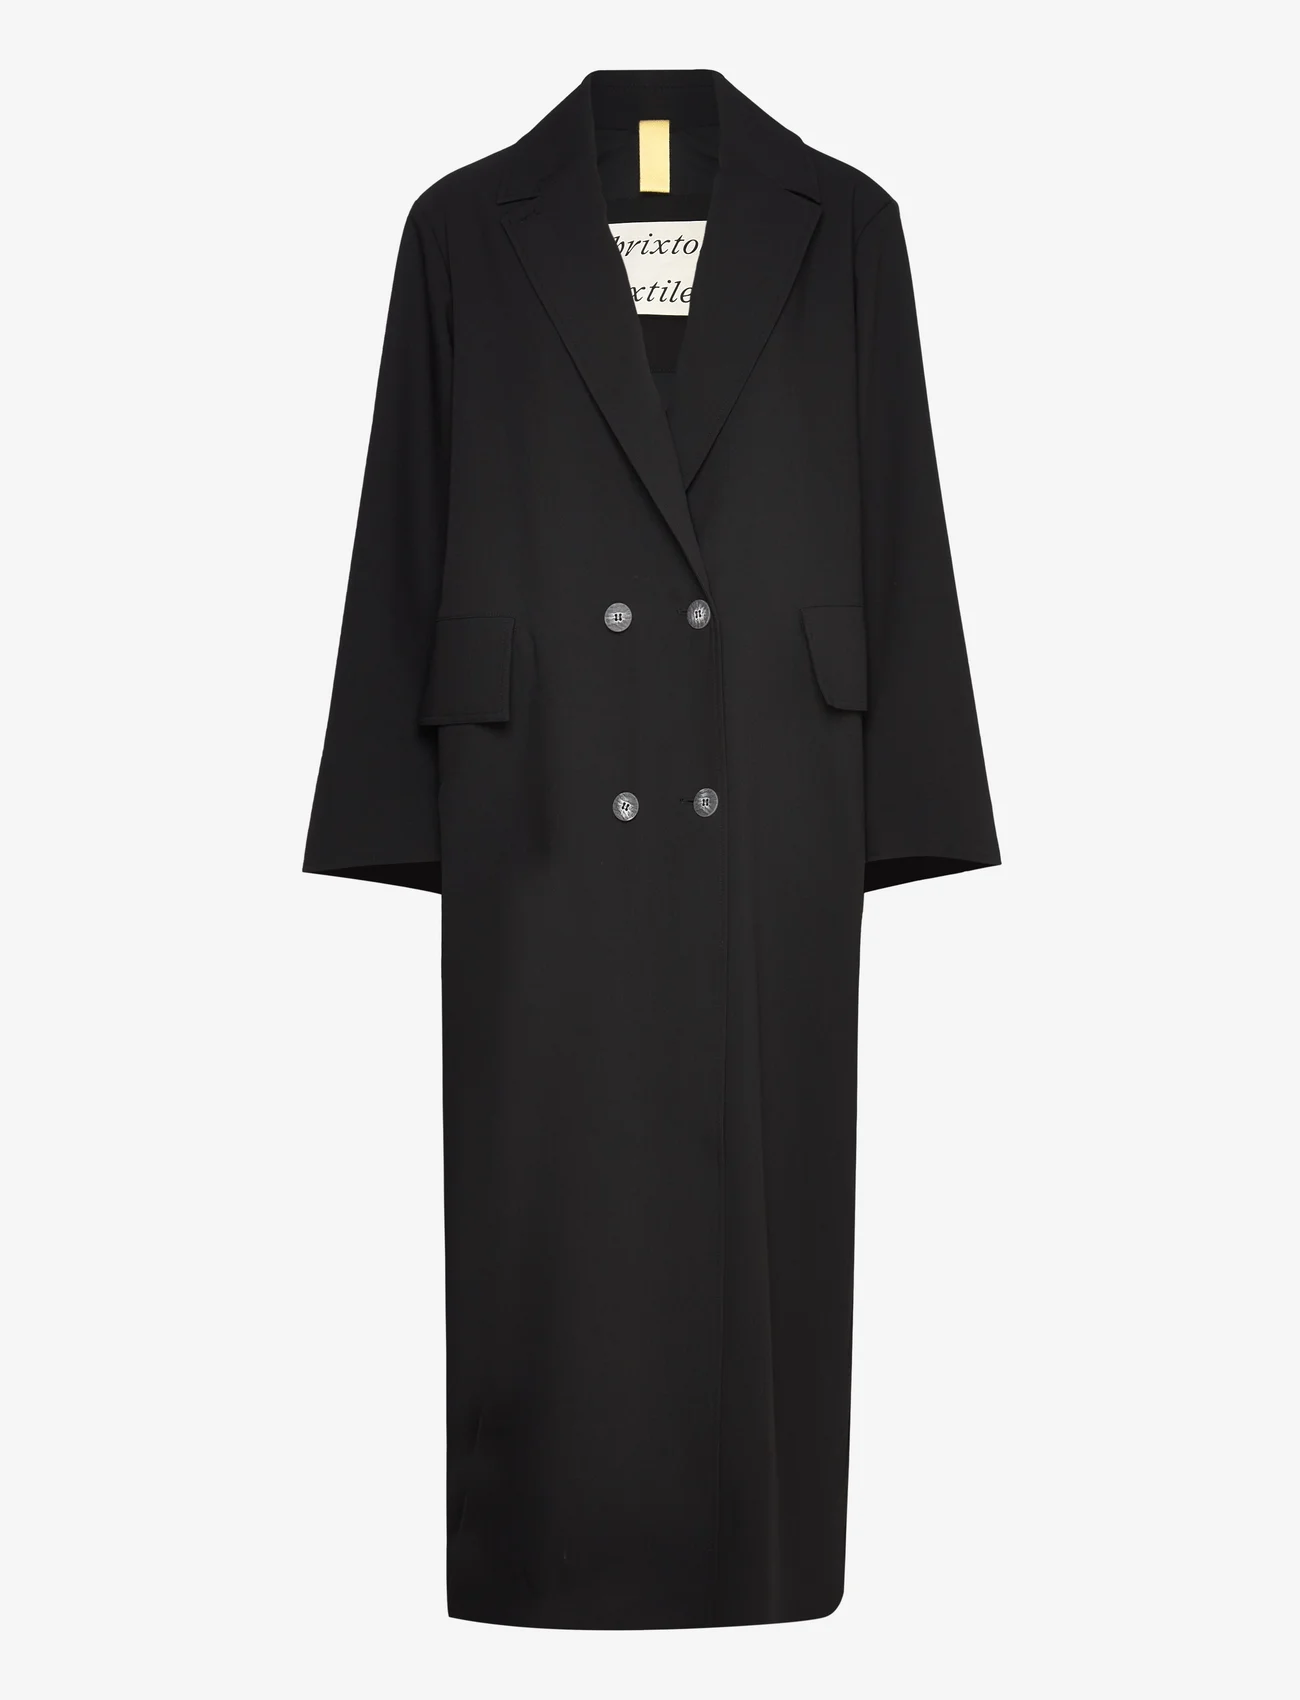 Brixtol Textiles - Olivia - Polyester coat - winter coats - black - 0